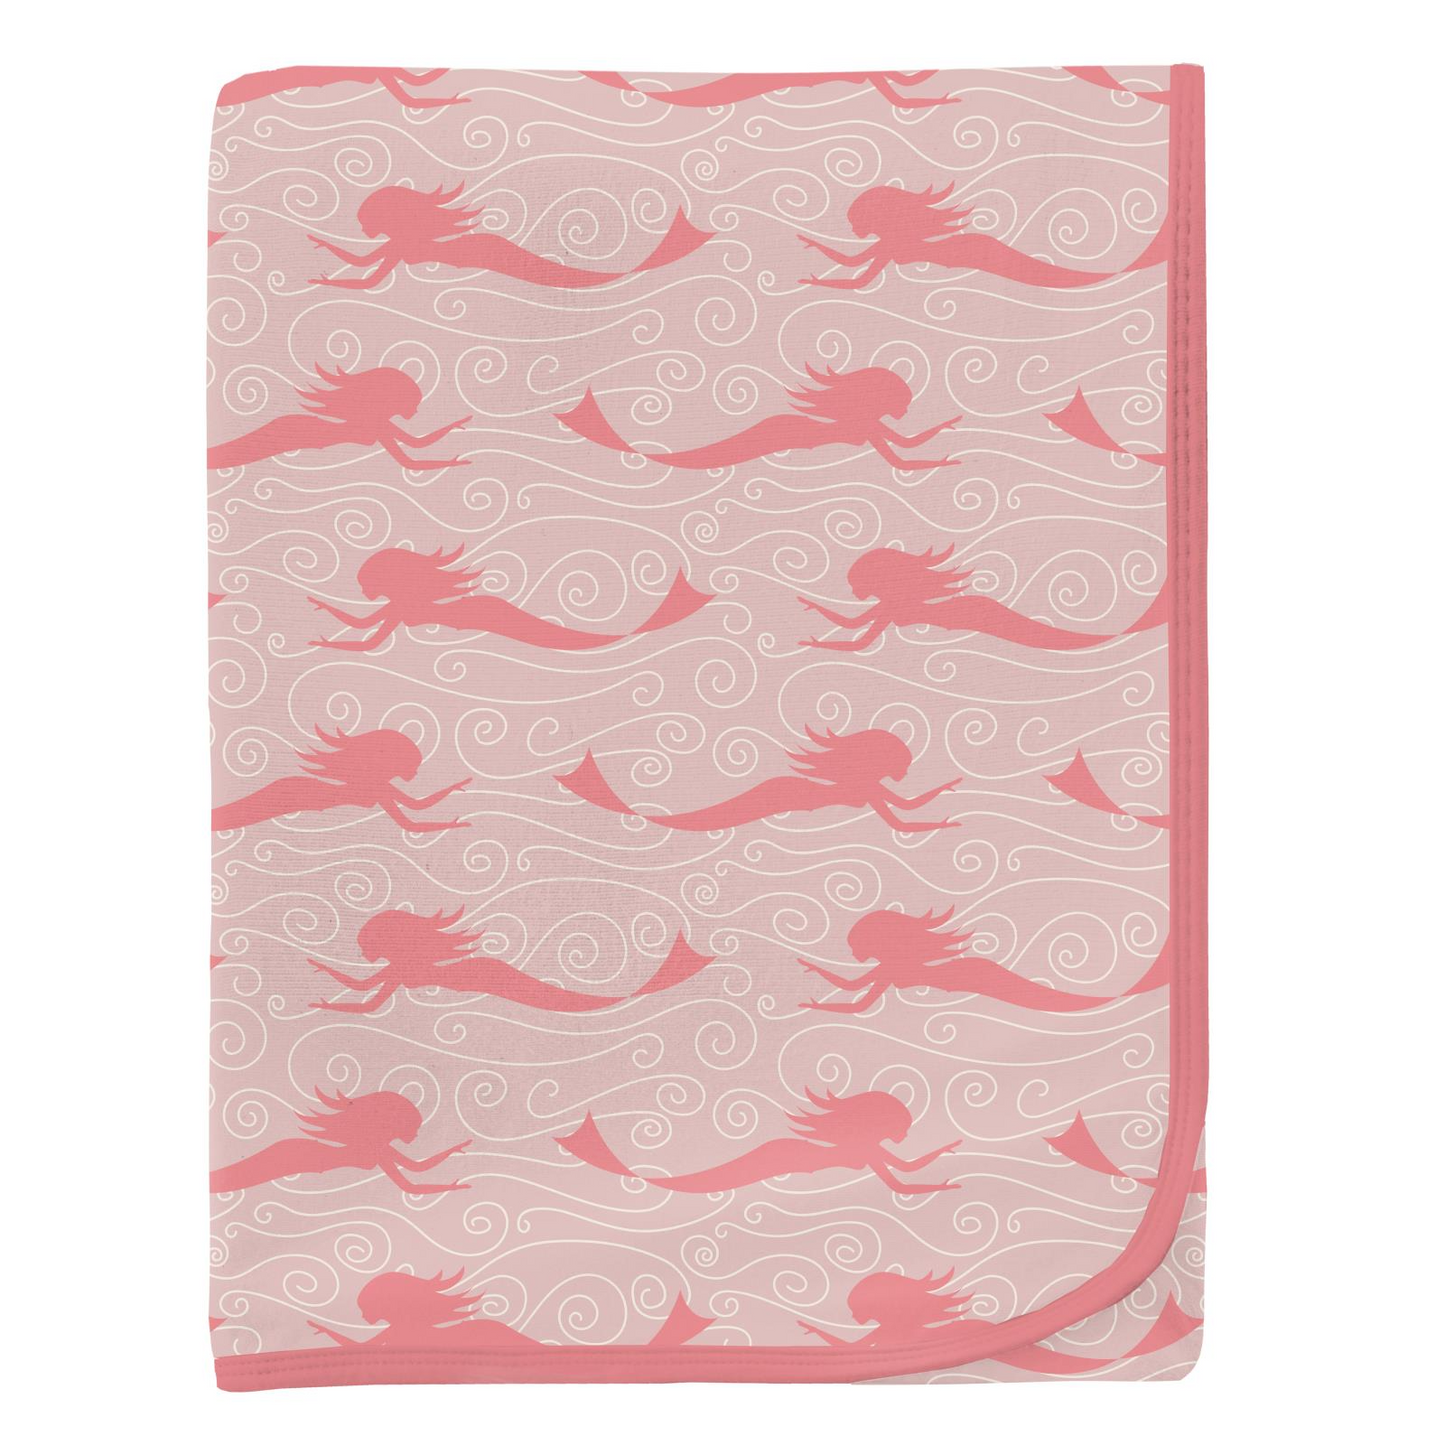 Kickee Pants Print Swaddling Blanket: Baby Rose Mermaid